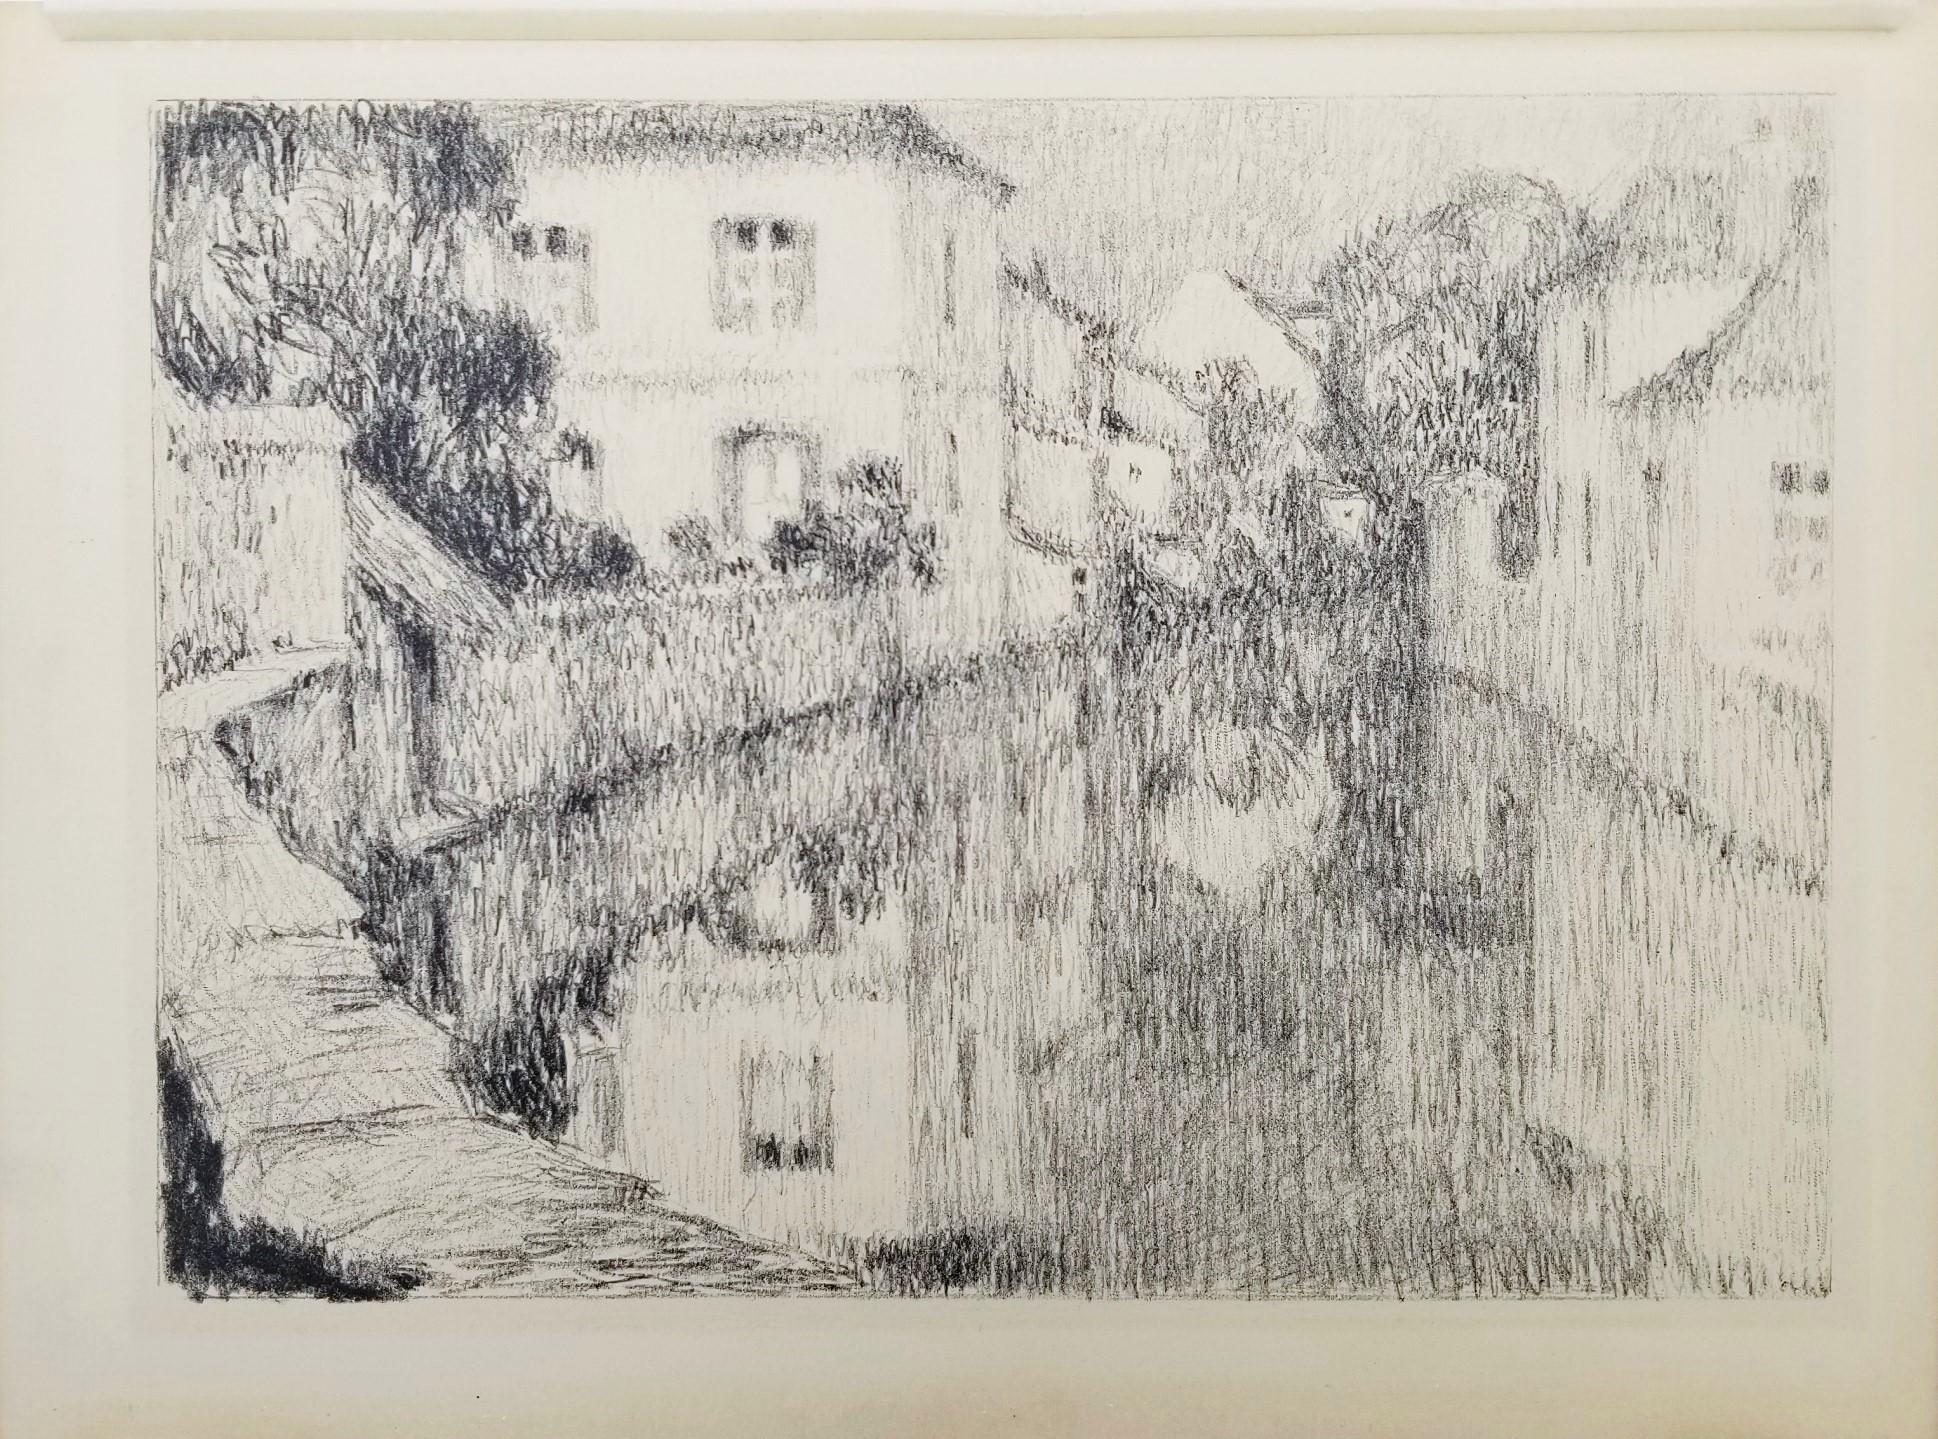 Maisons sur la Rivière, Canal à Nemours (Houses on the River, Nemours Canal) - Print by Henri Le Sidaner